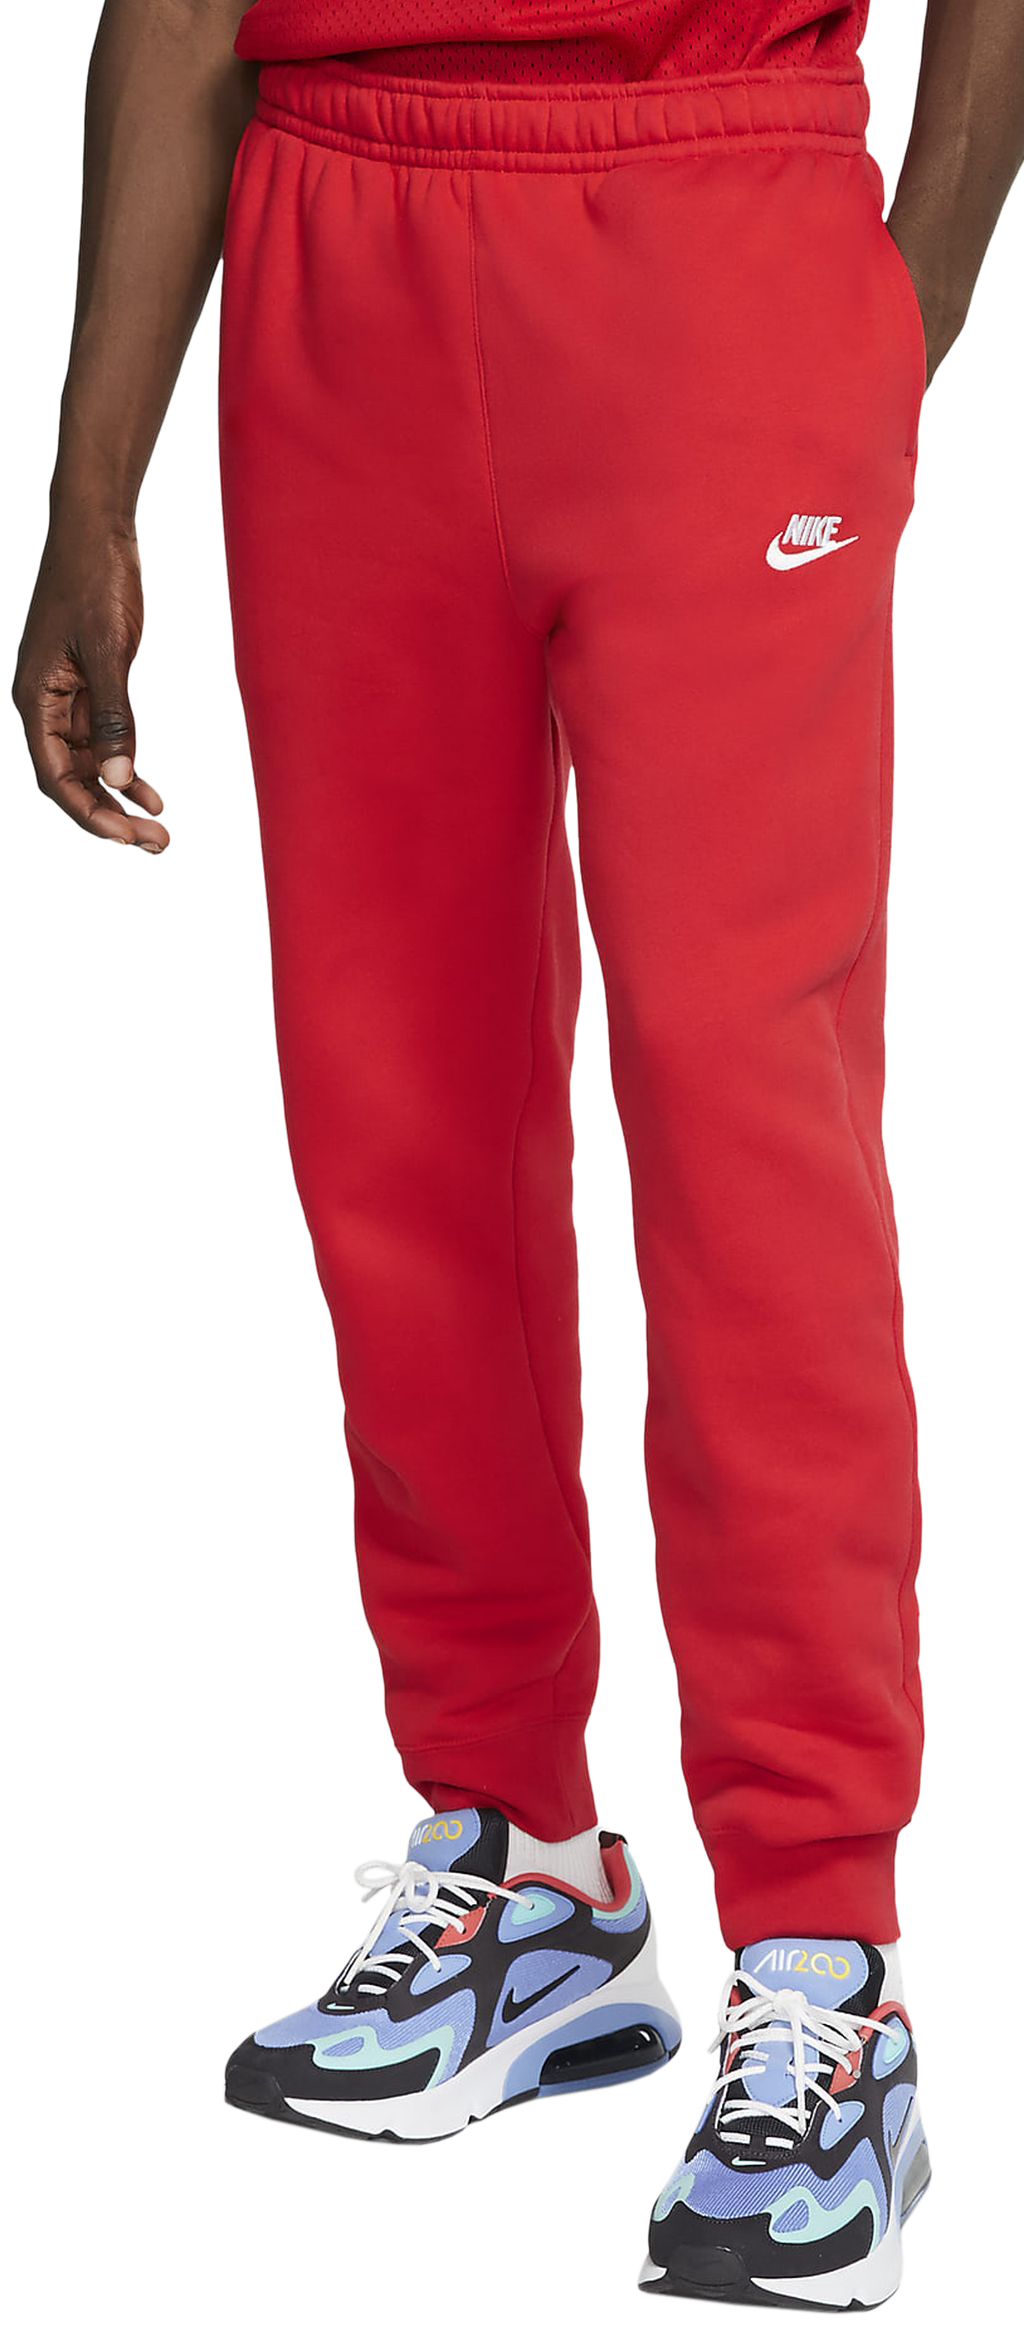 Men's trousers Nike Sportswear Club Fleece M - university red